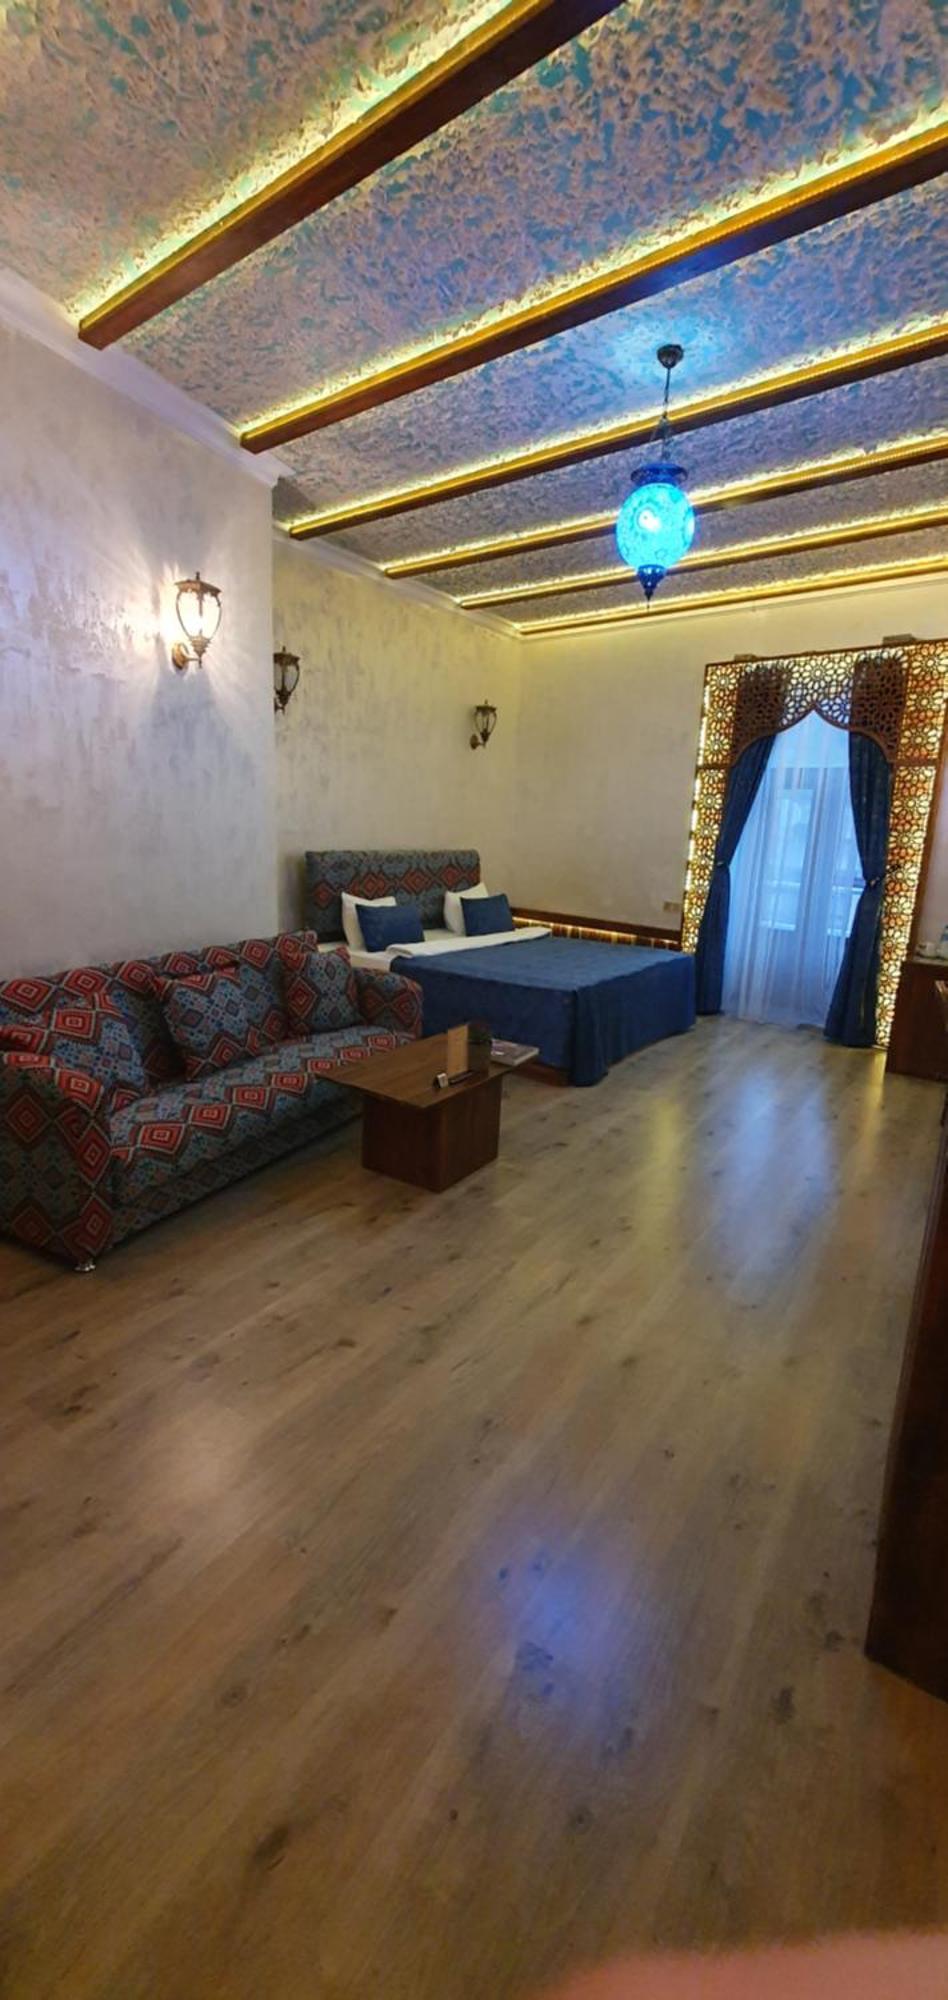 Qiz Galasi Hotel Baku Zewnętrze zdjęcie